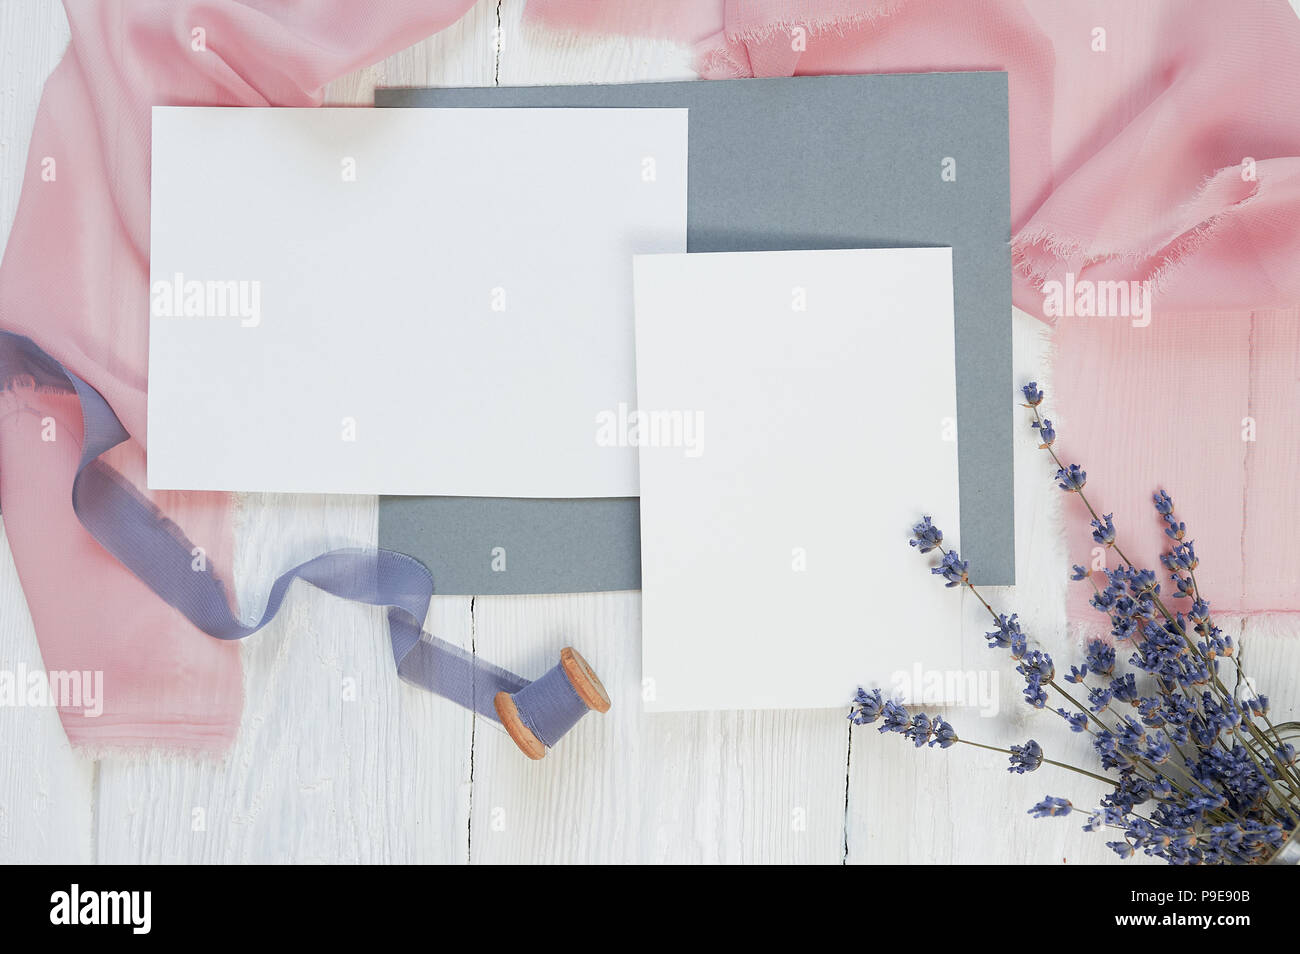 Carte vierge blanc ruban sur un fond de tissu rose et bleu avec des fleurs de lavande sur un fond blanc. Immersive avec enveloppe et carte vierge. Mise à plat. Vue d'en haut Banque D'Images